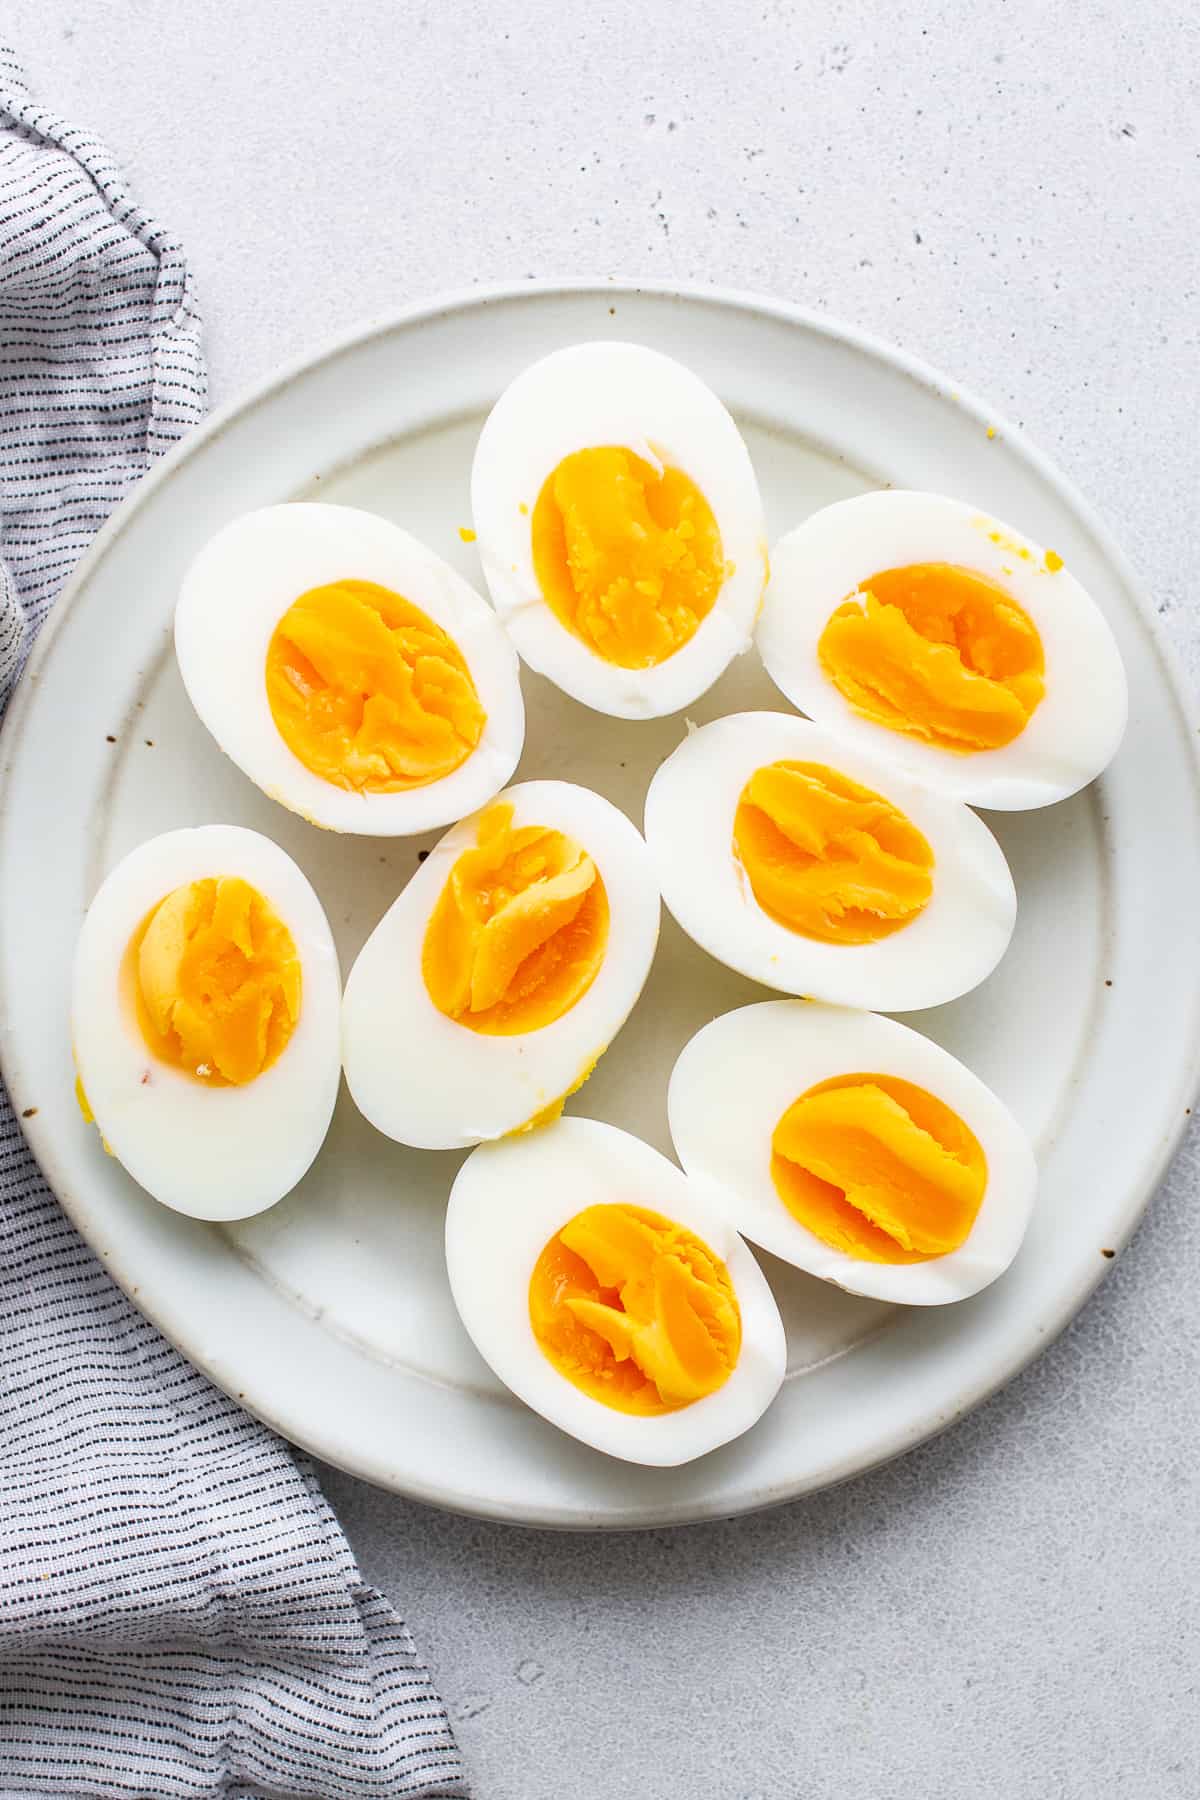 Hart gekochte Eier halbiert auf einem Teller.